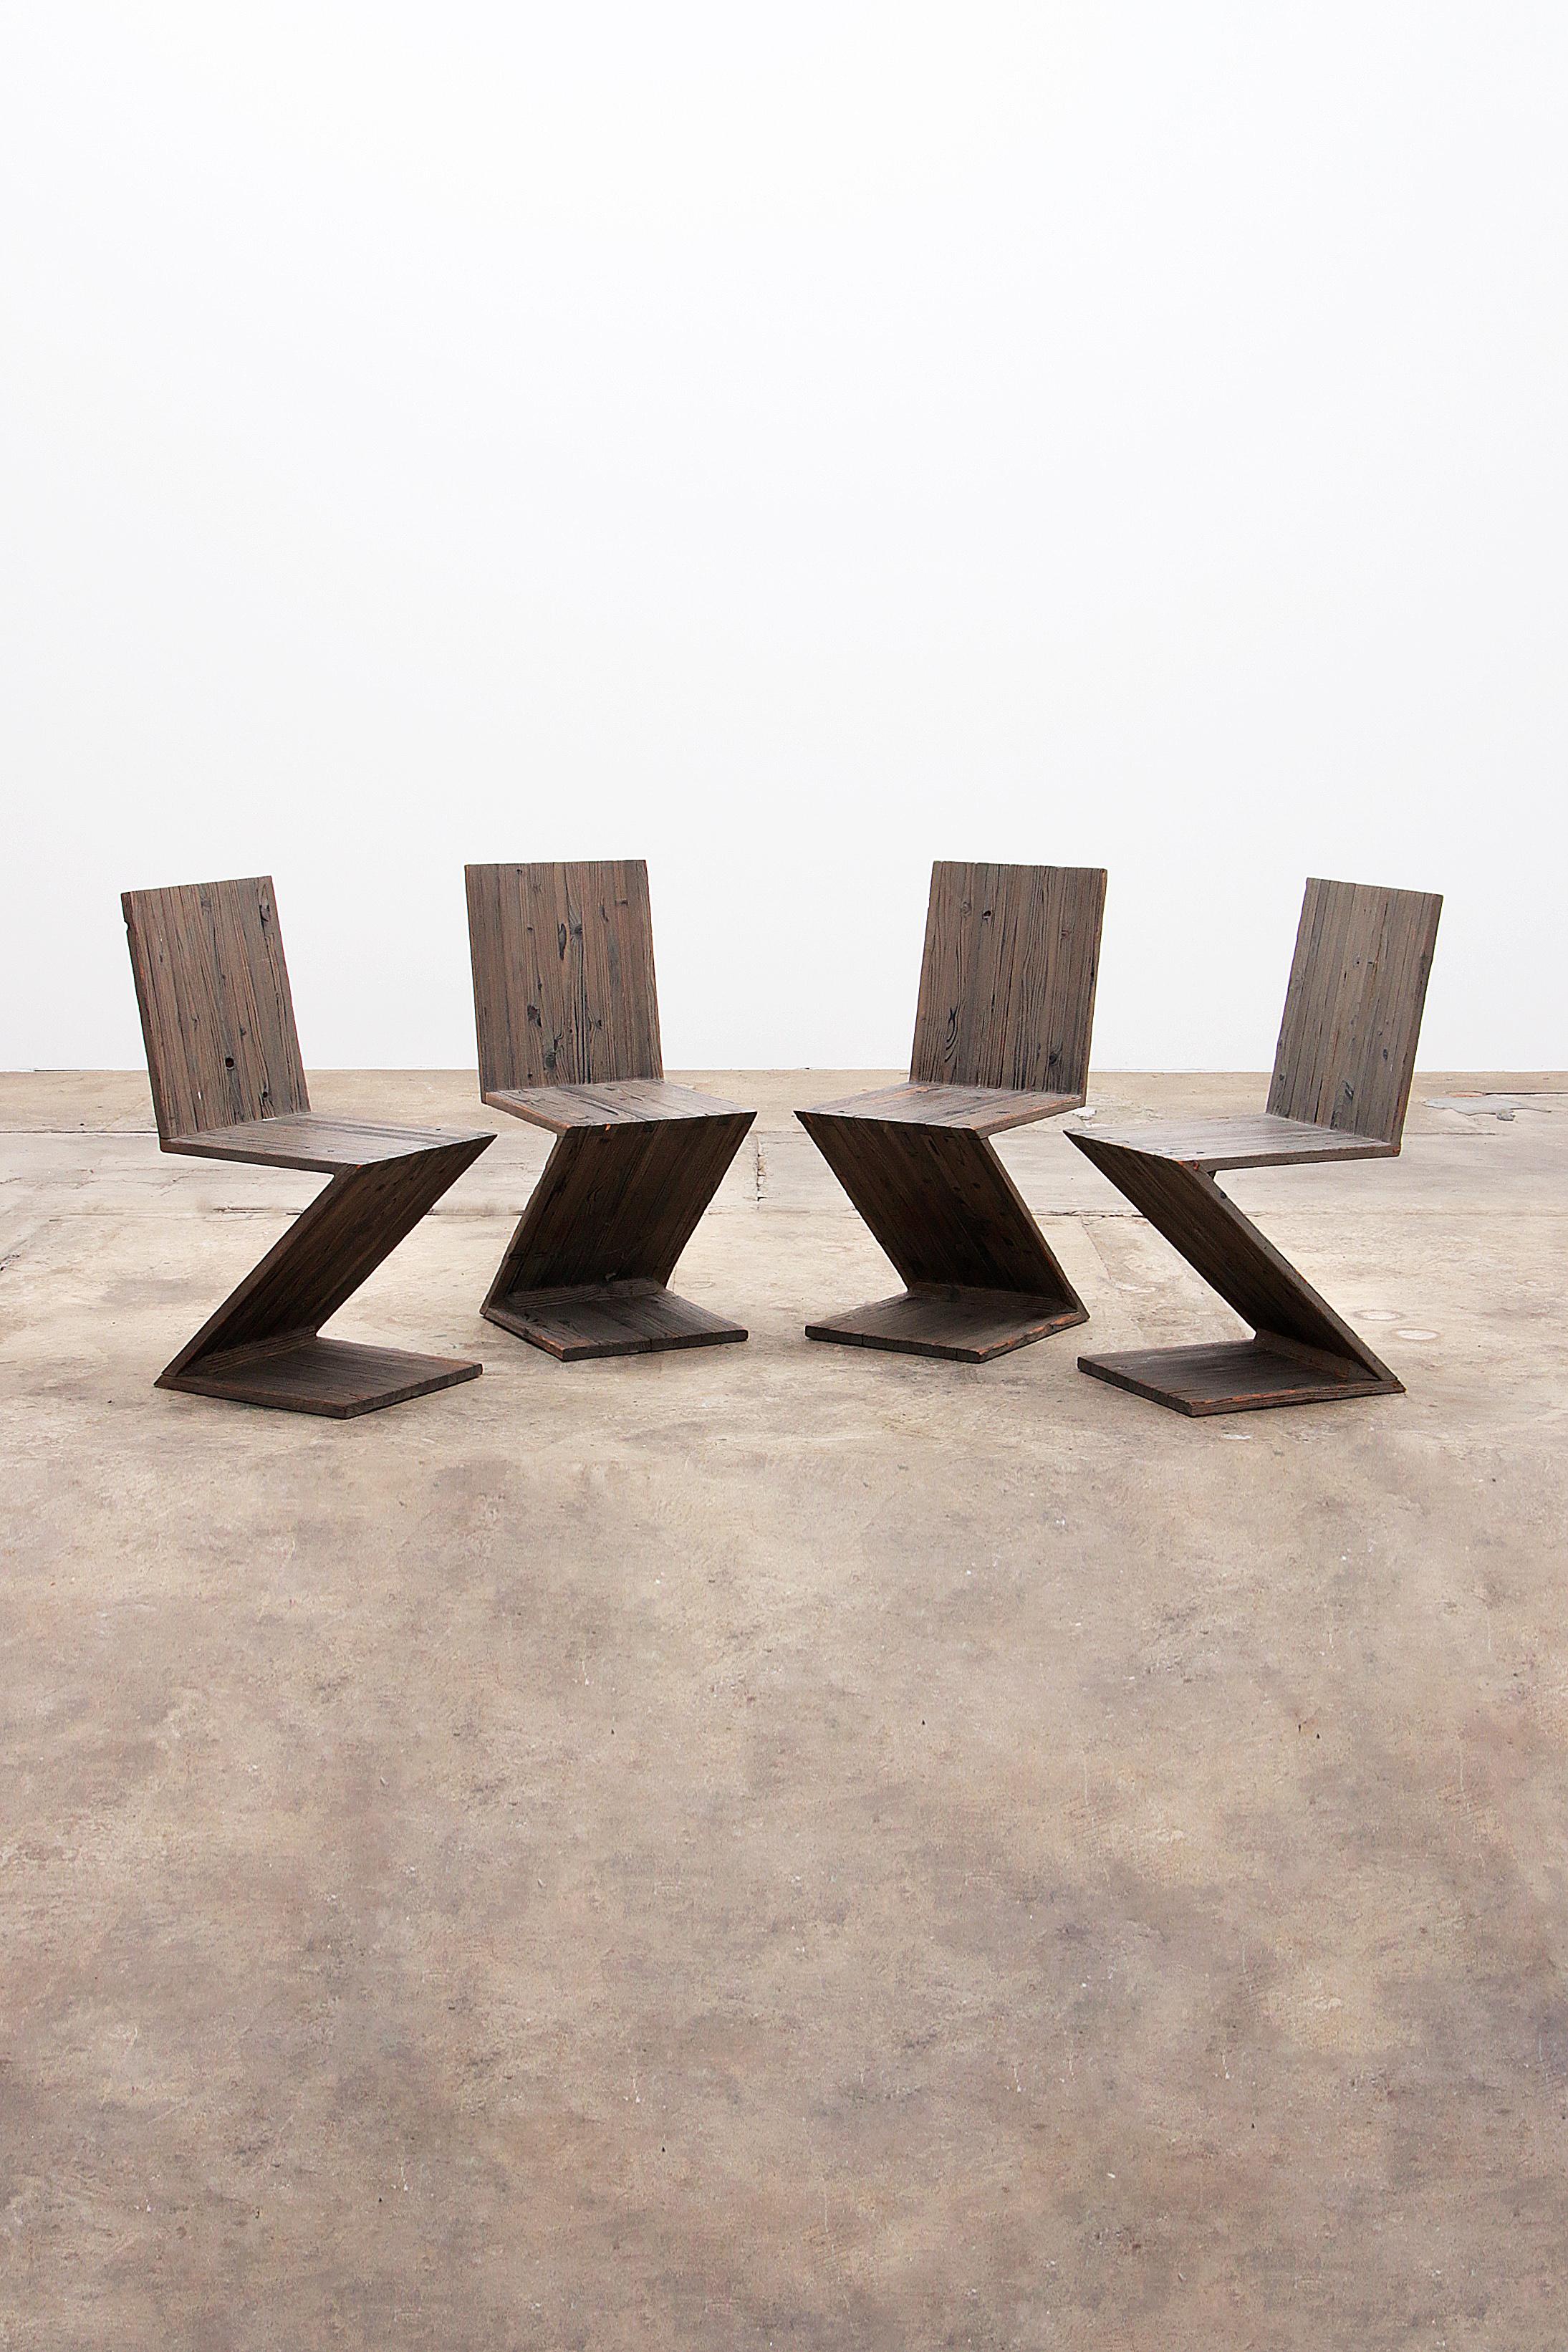 Entdecken Sie den ikonischen Rietveld Zigzag Chair, ein Meisterwerk des niederländischen Designs, das seit 1934 die Inneneinrichtung weltweit bereichert. 
Diese Sonderausgabe wurde für eine Künstlerfamilie entwickelt und bietet einen tieferen Sitz